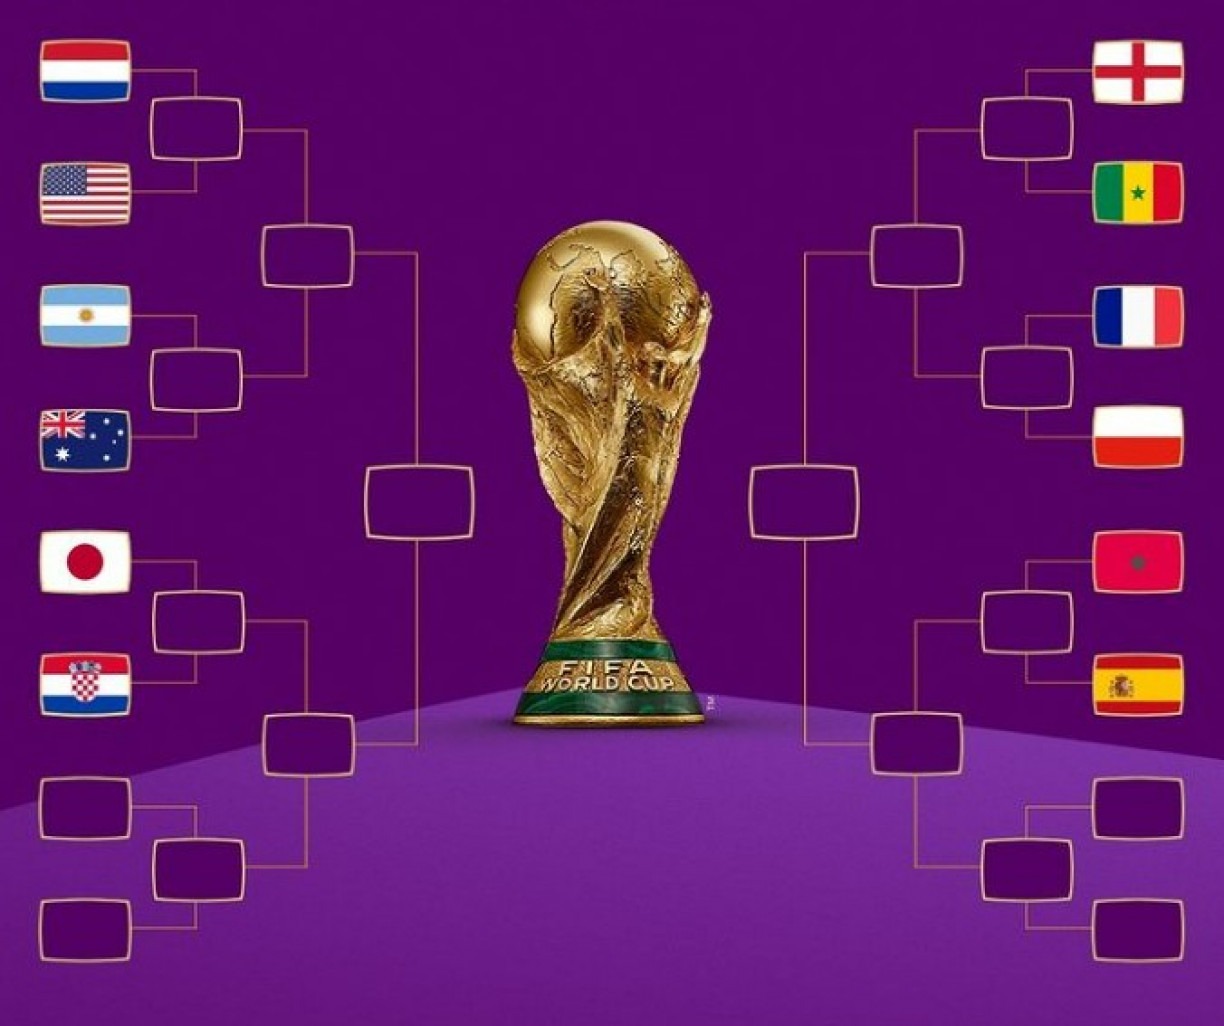 Se o Brasil ganhar hoje, quando será o próximo jogo? Saiba tudo sobre os próximos jogos da seleção